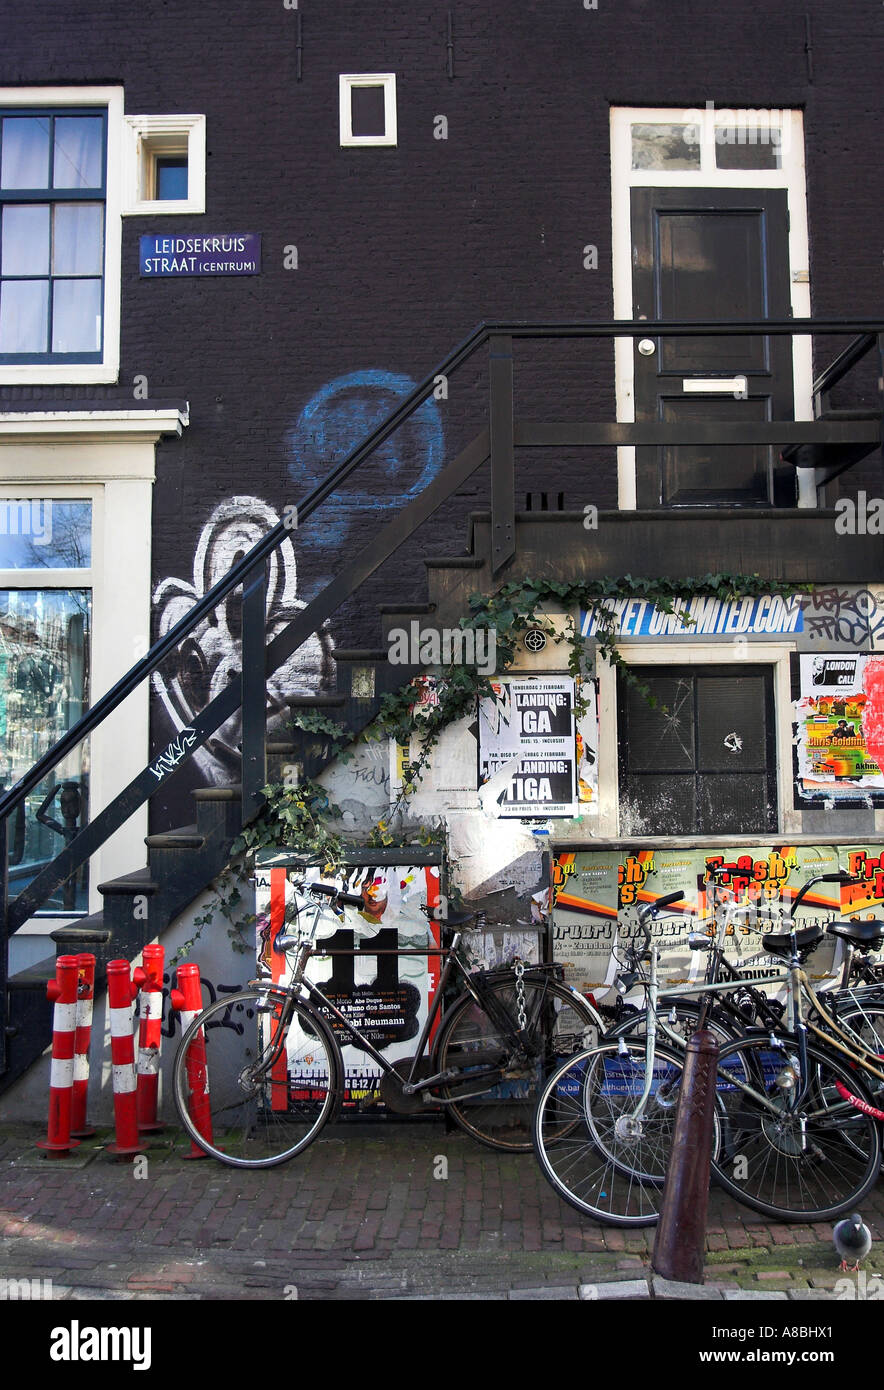 Ein Porträt Format Bild einer typischen inneren Stadt Amsterdam Seitenstraße mit Fahrrädern und Graffitis an den Wänden. Stockfoto